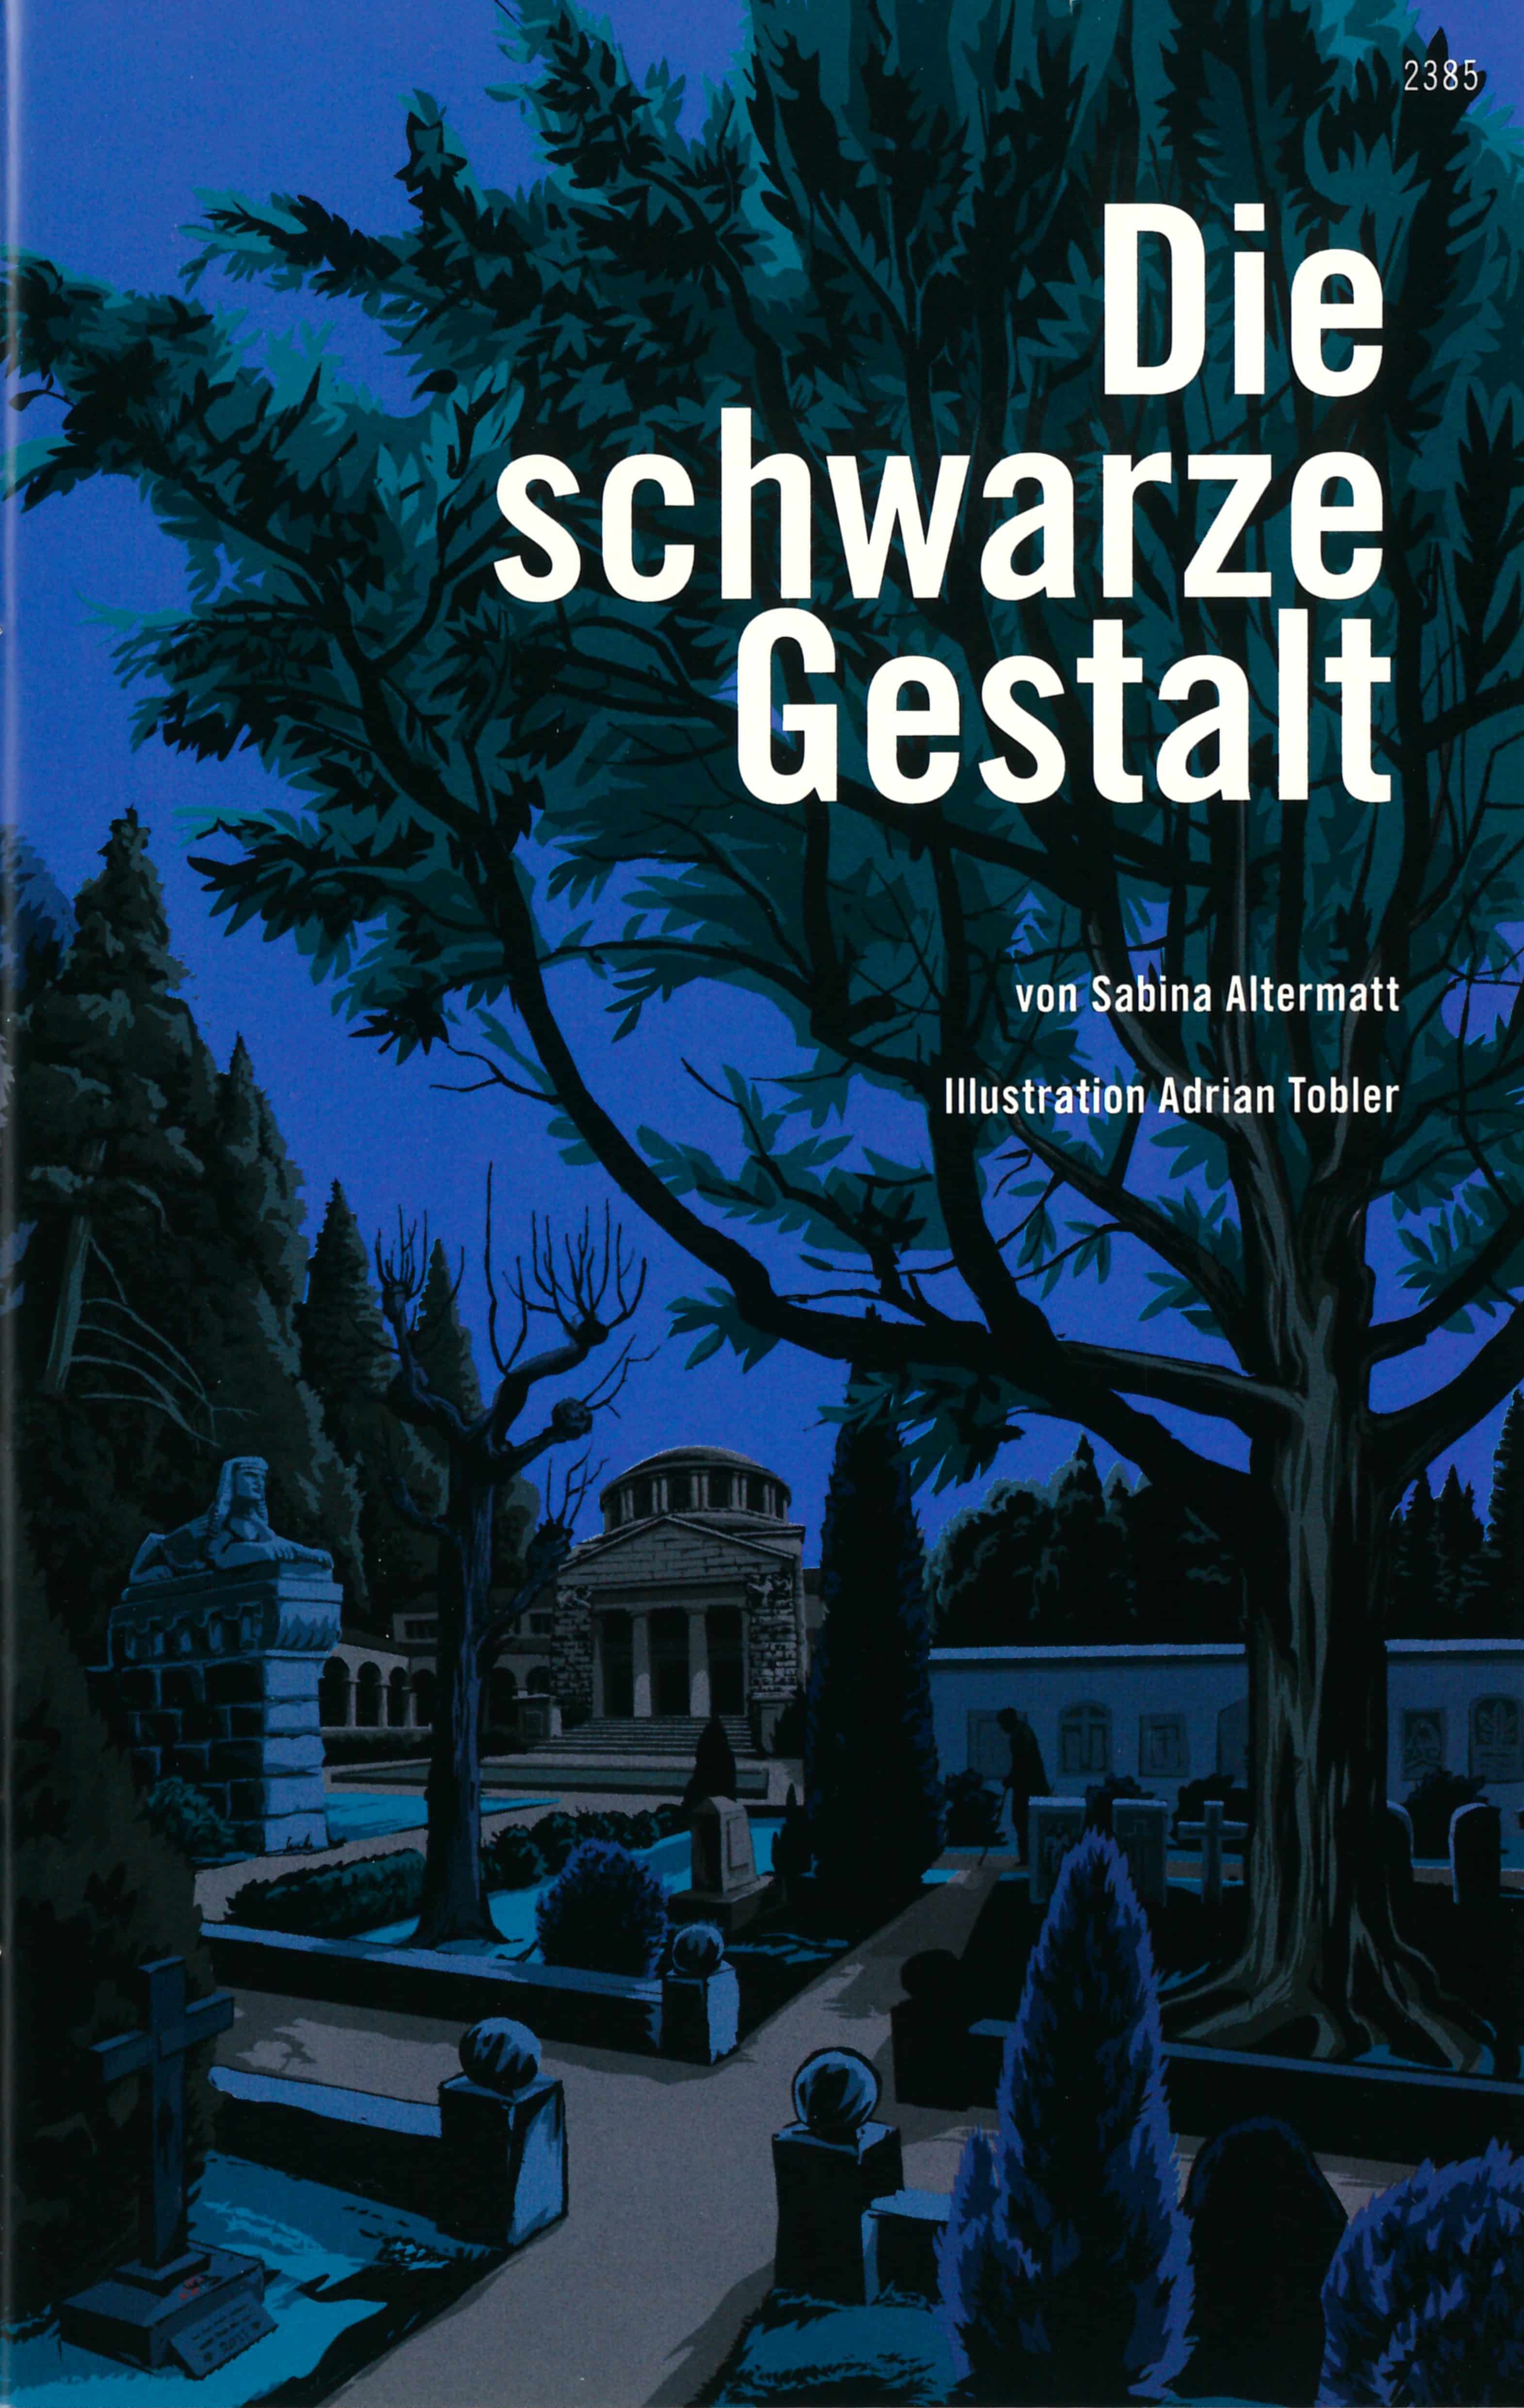 Die schwarze Gestalt, ein Jugendbuch von Sabina Altermatt, Illustration von Adrian Tobler, SJW Verlag, Krimi